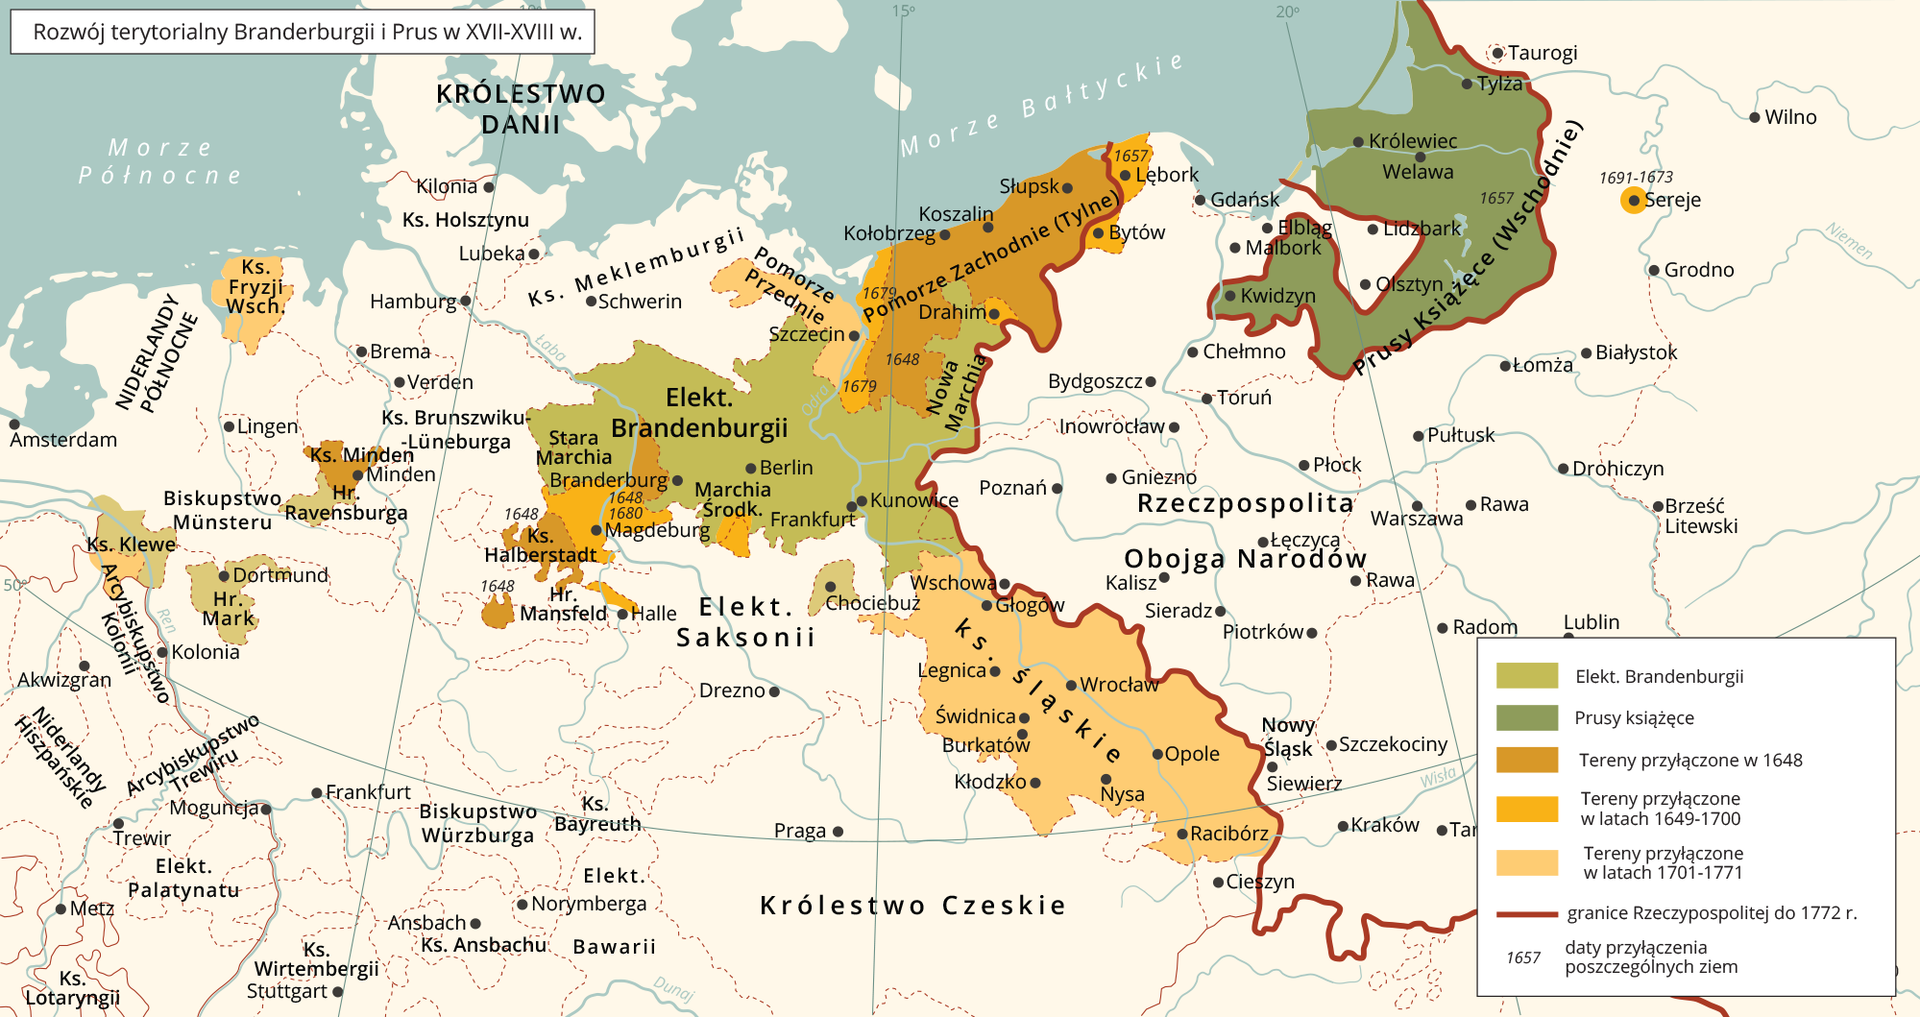 Mapa Europy przedstawiająca rozwój terytorialny Brandenburgii i Prus w XVII–XVIII wieku. Elekt. Brandenburgii obejmuje tereny dzisiejszych środkowych Niemiec z miastami Brandenburg i Niemcy. Prusy Książęce obejmujące tereny dzisiejszą Warmię i Mazury oraz Obwód Kaliningradzki z miastem Królewiec. Tereny przyłączone w 1648 roku obejmujące Pomorze Zachodnie, miasto Minden w środkowych Niemczech i południowe okolice Brandenburgii. Tereny przyłączone w latach 1649–1700 obejmujące południowe okolice Brandenburga oraz zachodnich i wschodnich terenów Pomorza Zachodniego. Tereny przyłączone w latach 1701–1771 obejmujące tereny Śląska, Pomorza Przedniego oraz Fryzji nad Morzem Północnym.